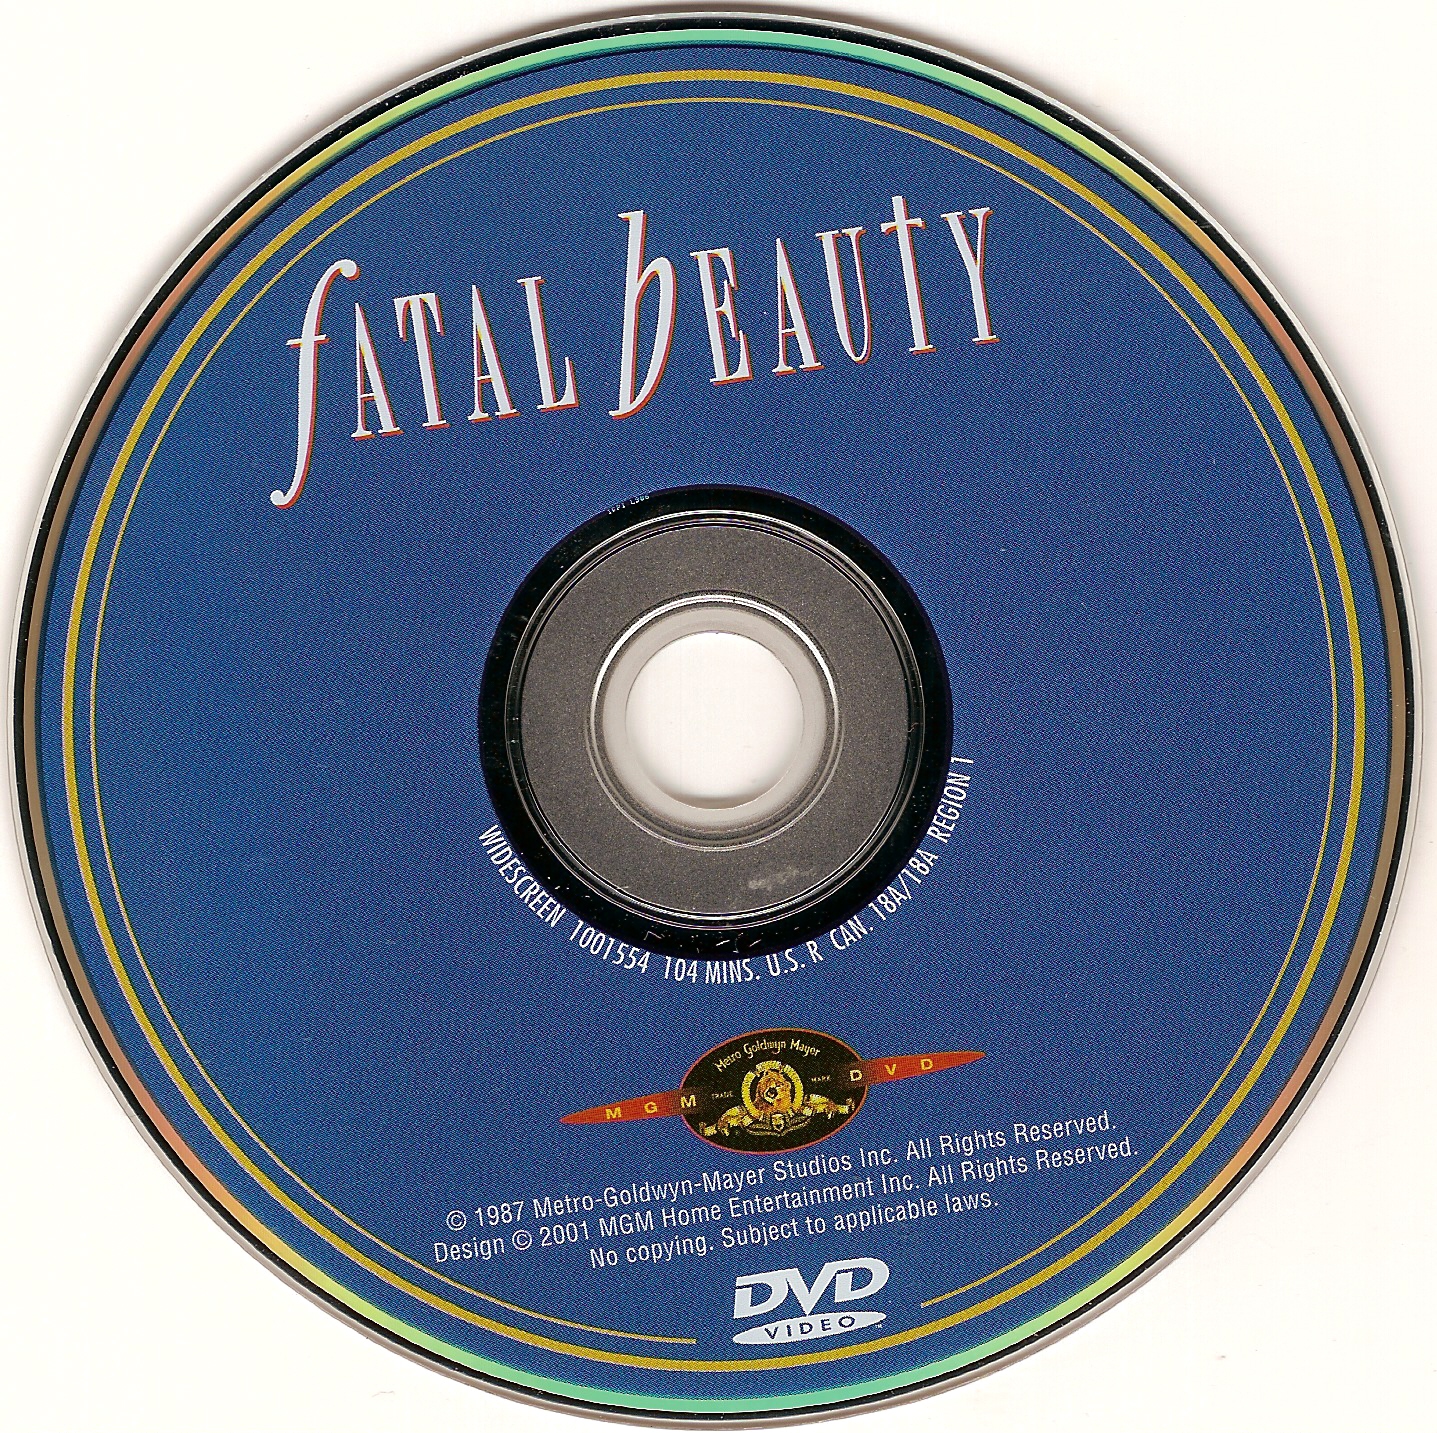 Fatal beauty